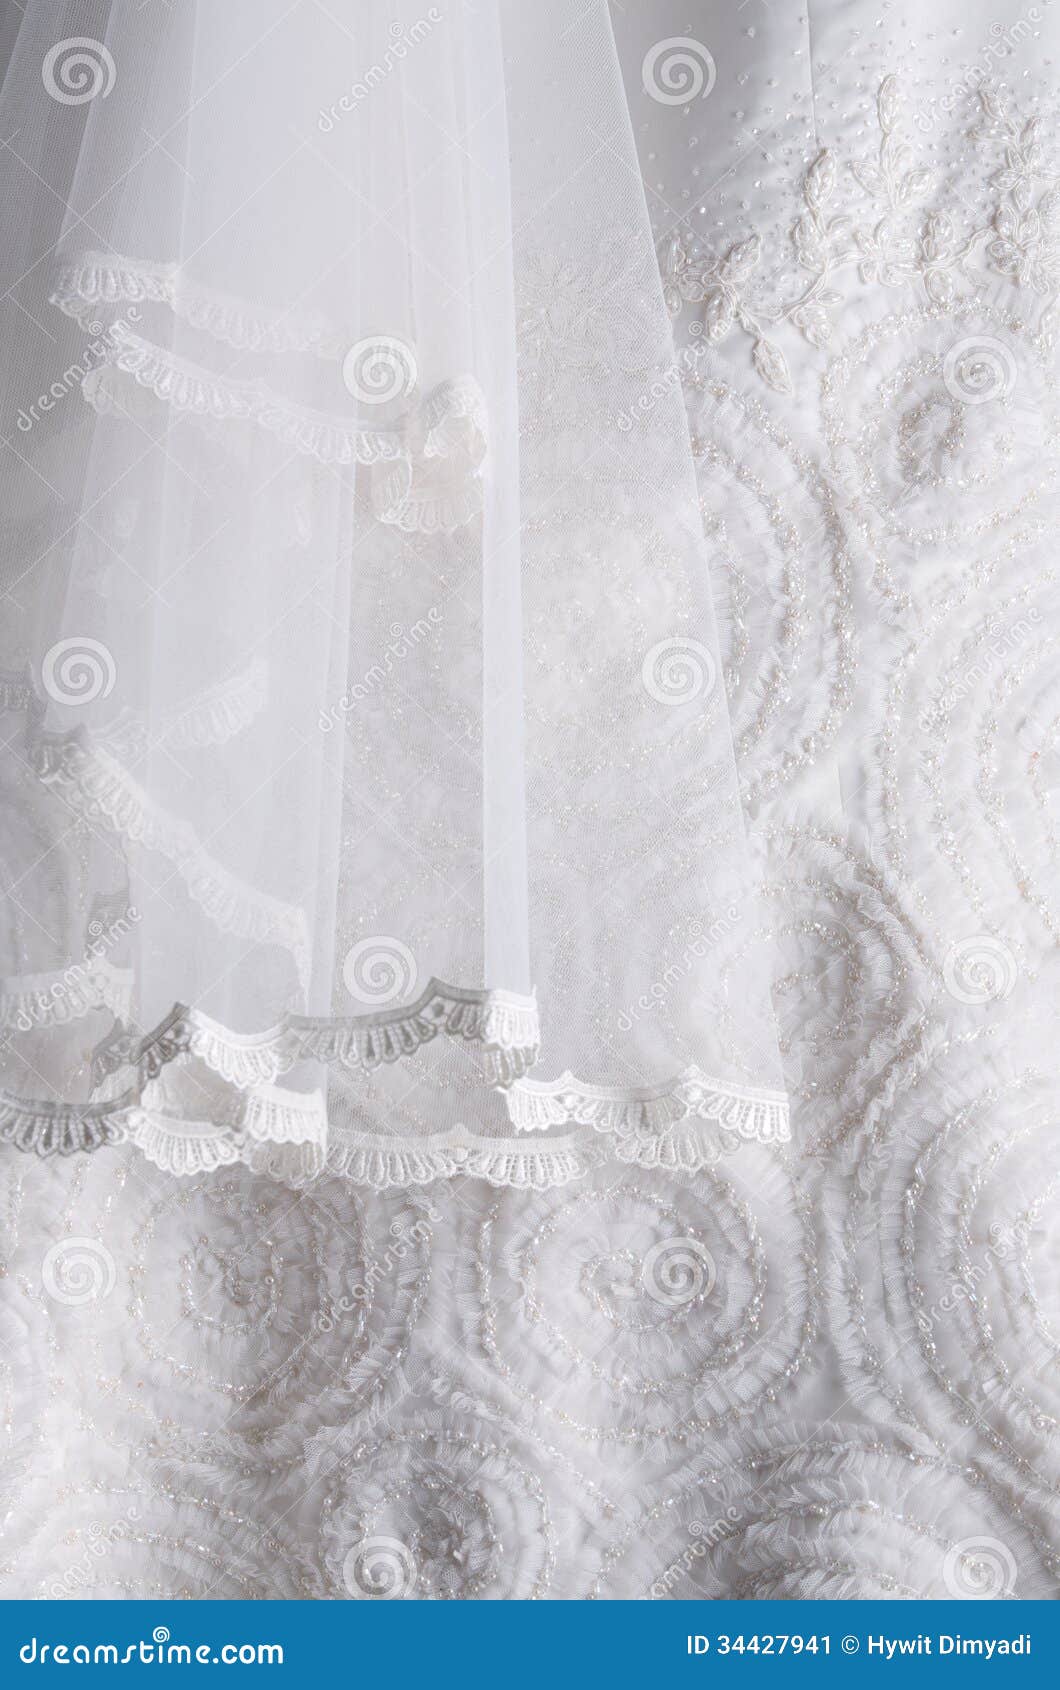 White Wedding Dress Background Stock Image - Image of celebration ...